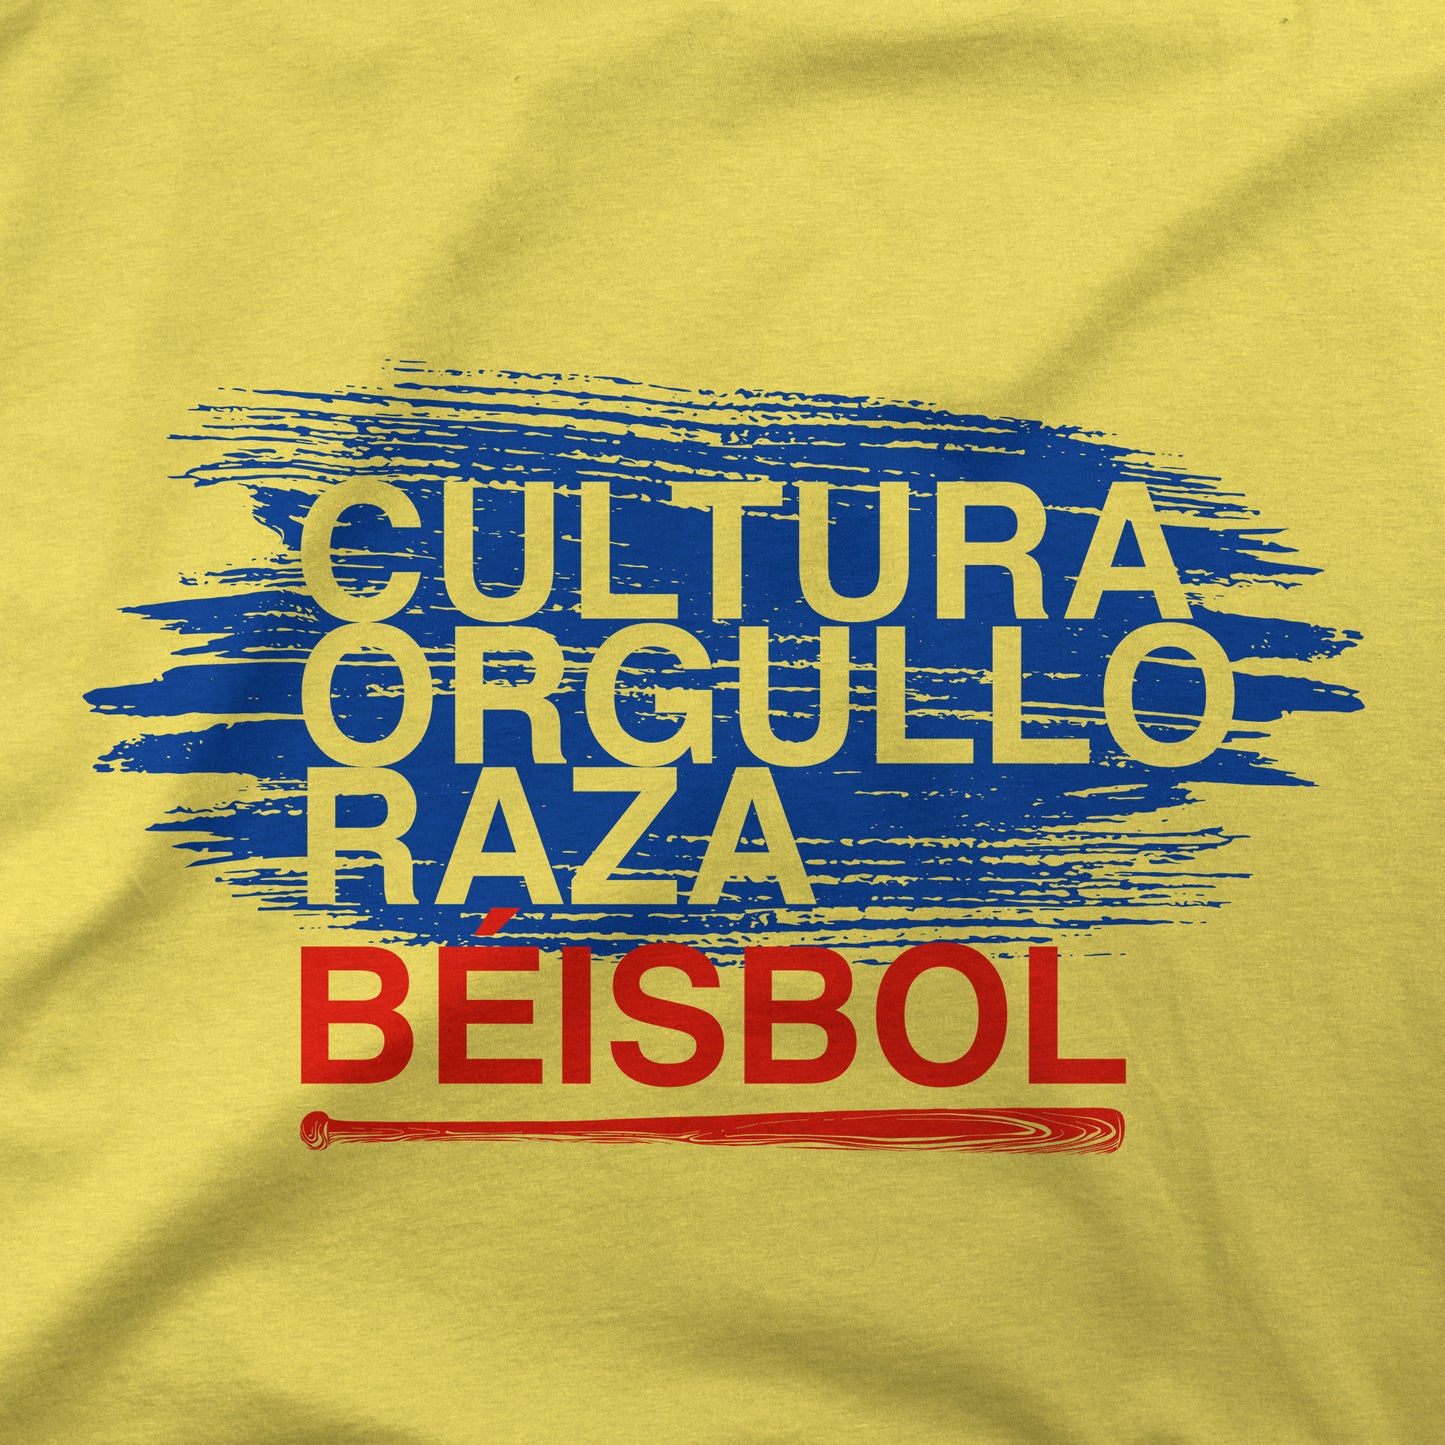 Cultura Orgullo Raza | Colombia | T-Shirt